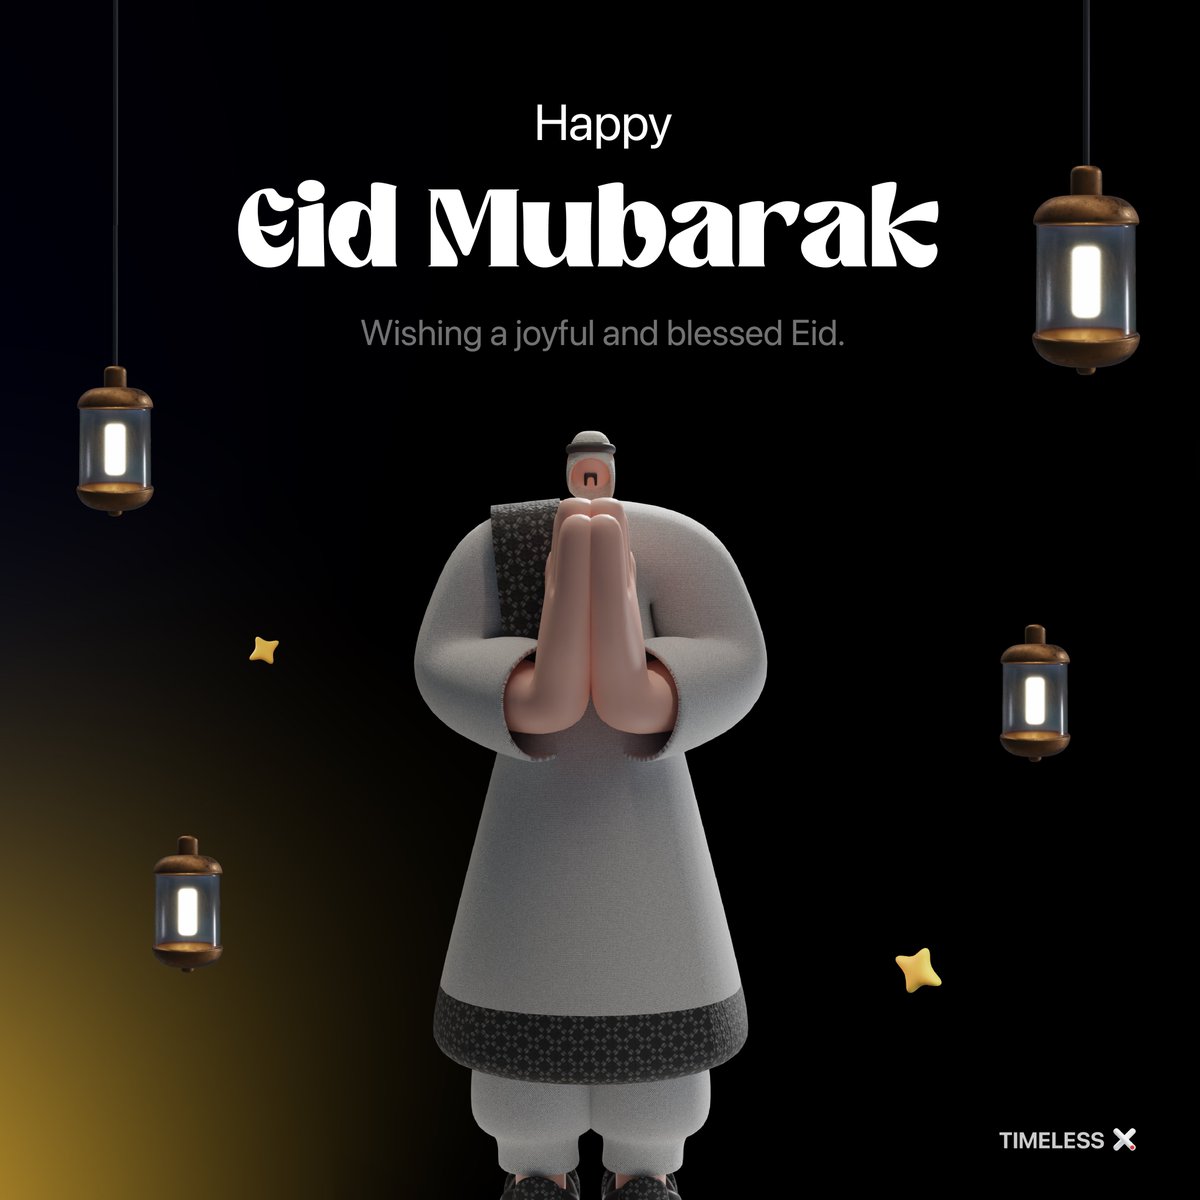 to all those celebrating Eid Mubarak 🫶